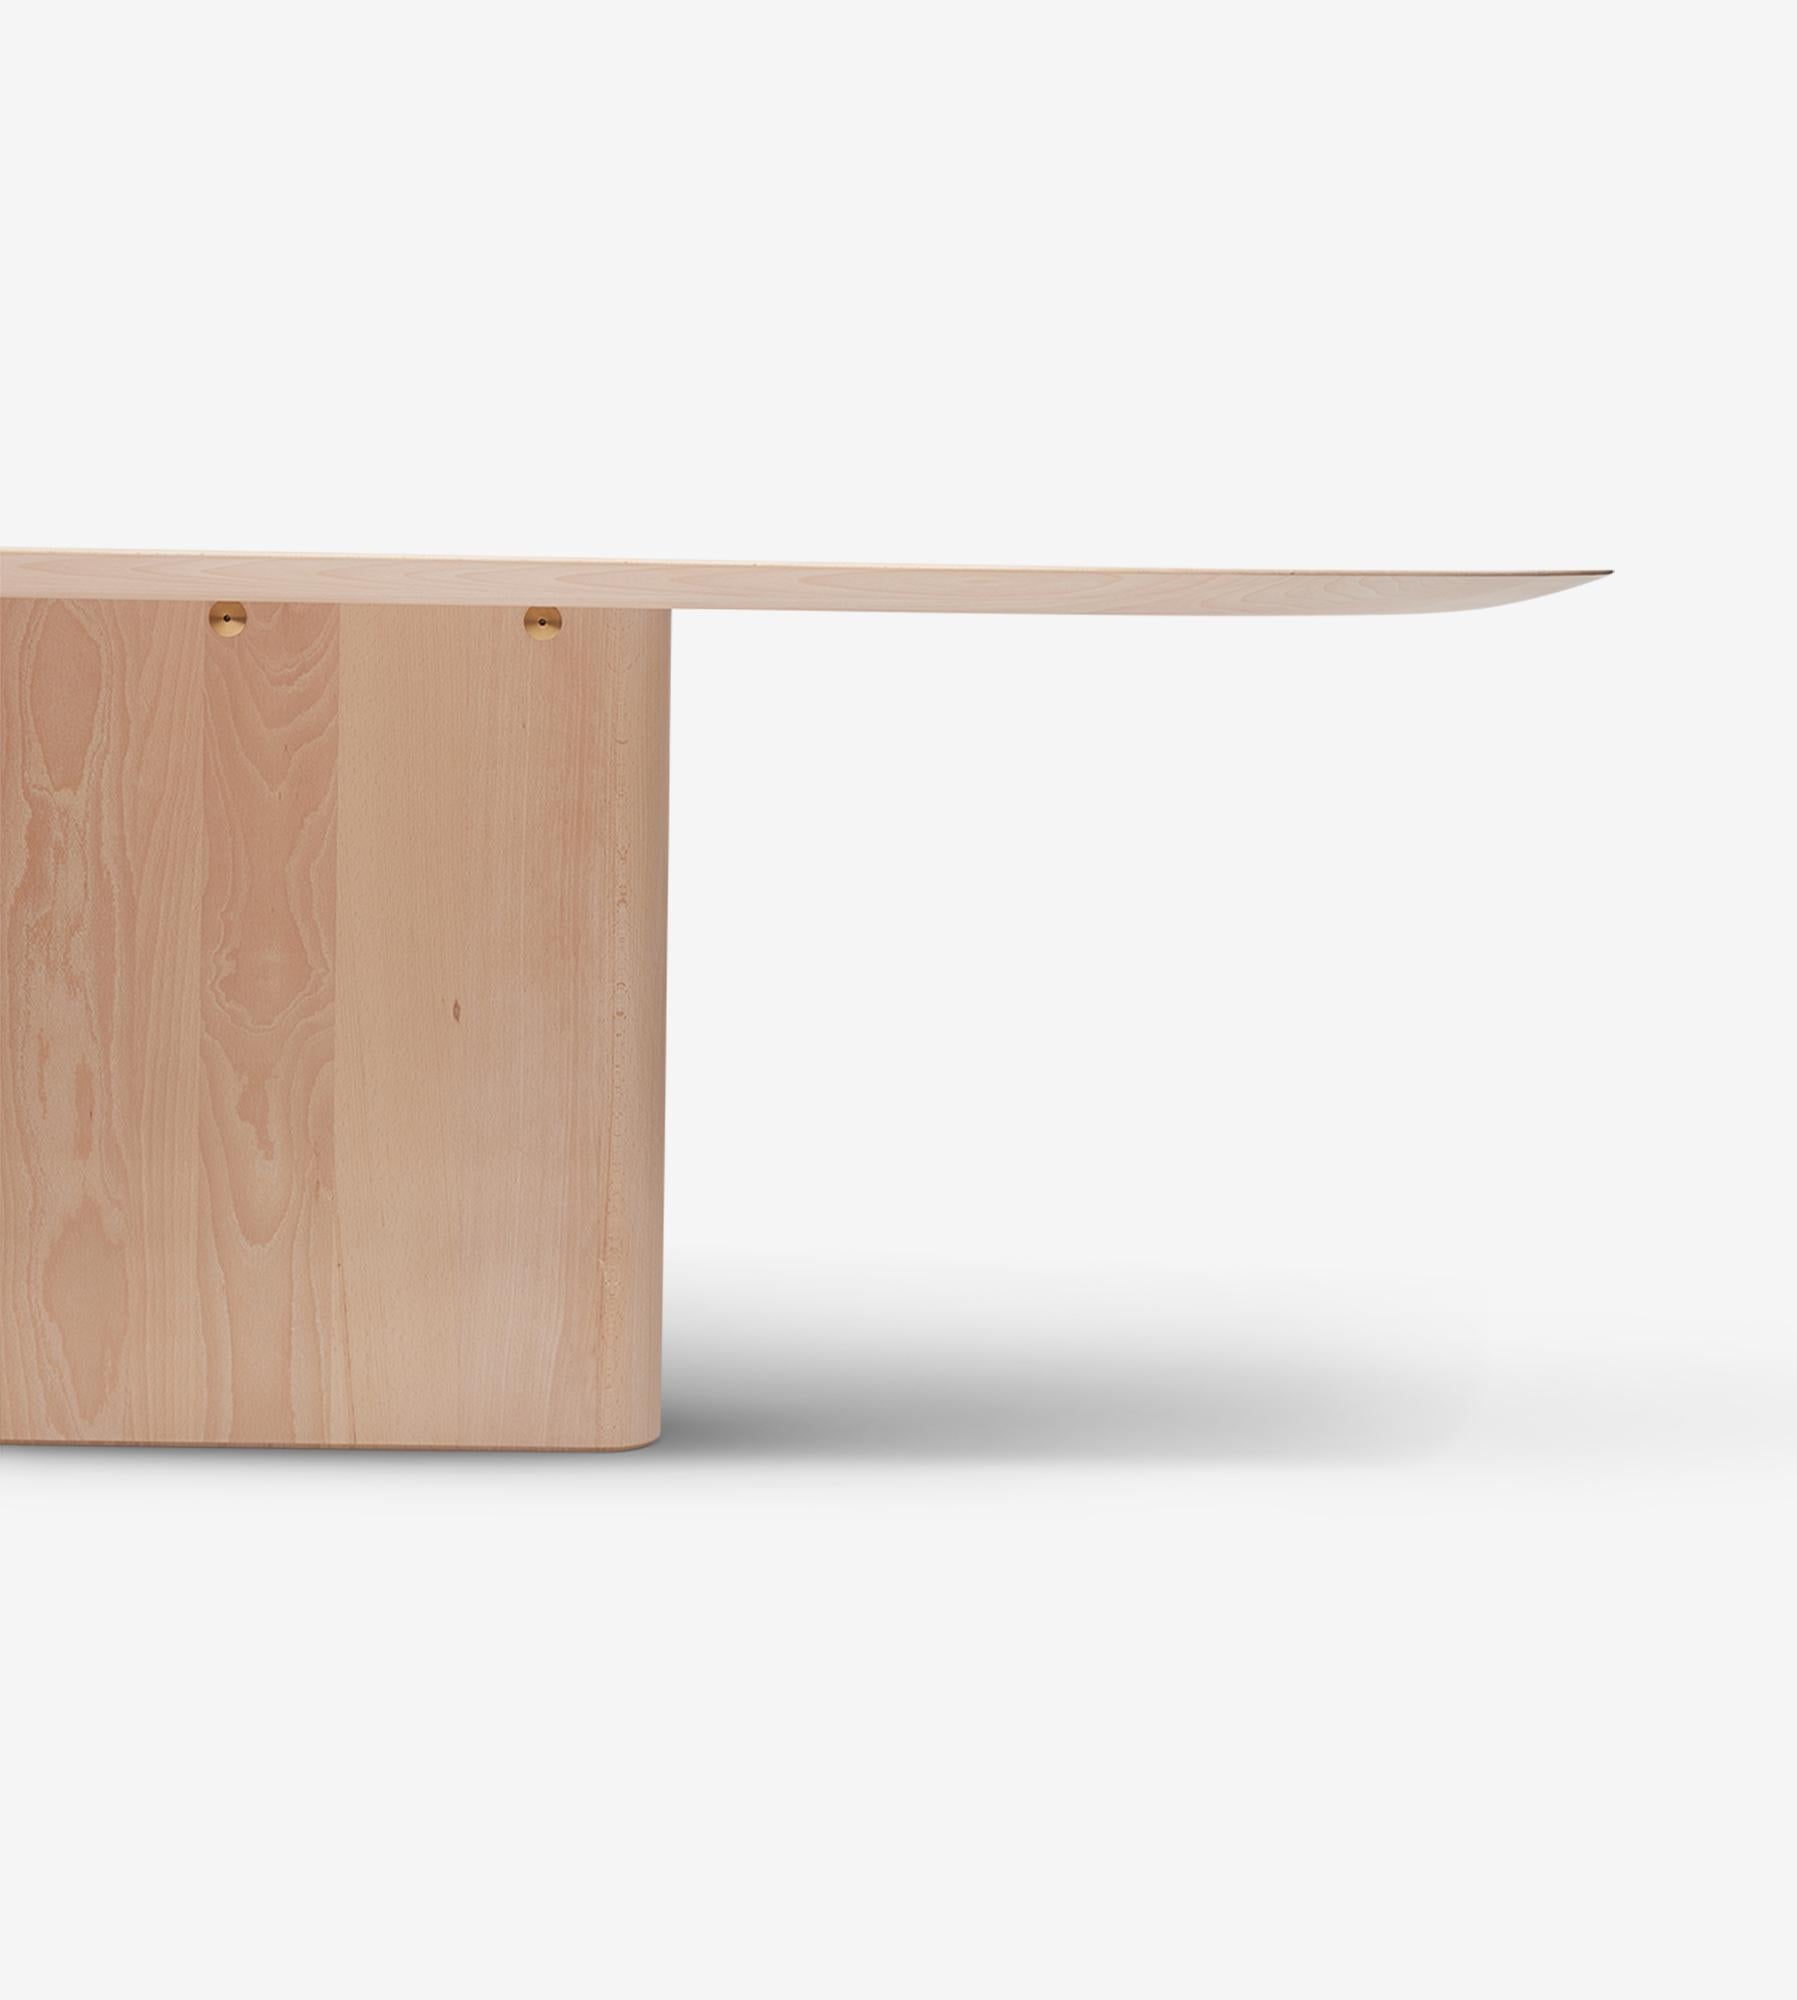 MG210 Table de salle à manger sculpturale.  Malte Gormsen Kollektion et peut être réalisée sur commande dans les deux versions suivantes
le chêne et le Beeche.

Traitement de surface : Beeche clair

Le bois est un matériau unique, dont l'aspect peut